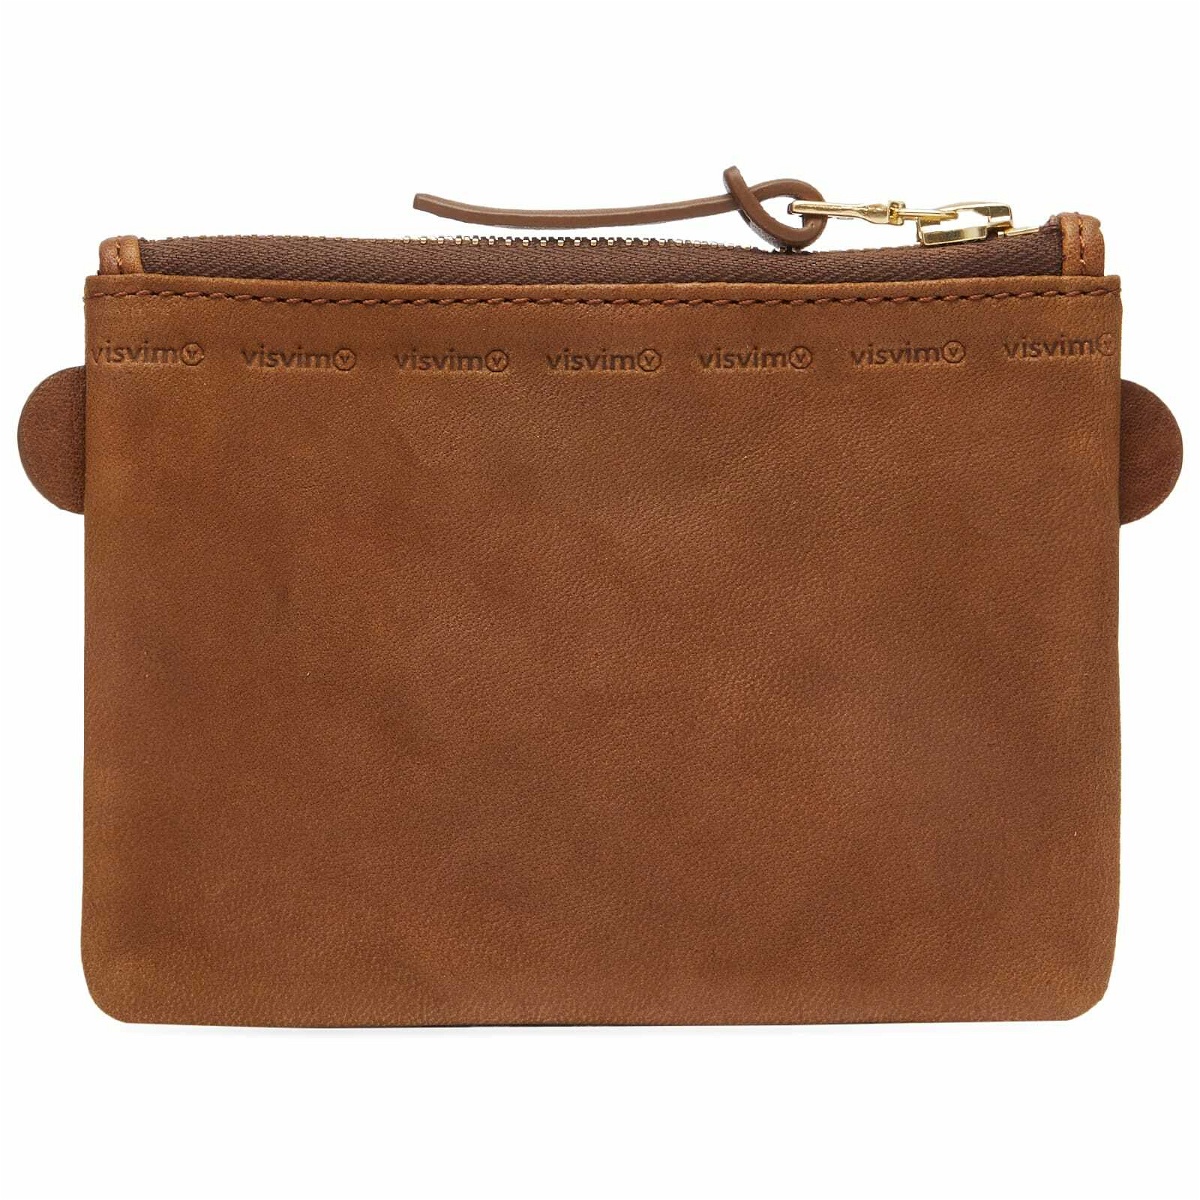 Visvim Men's Leather Essentials Case in Brown Visvim